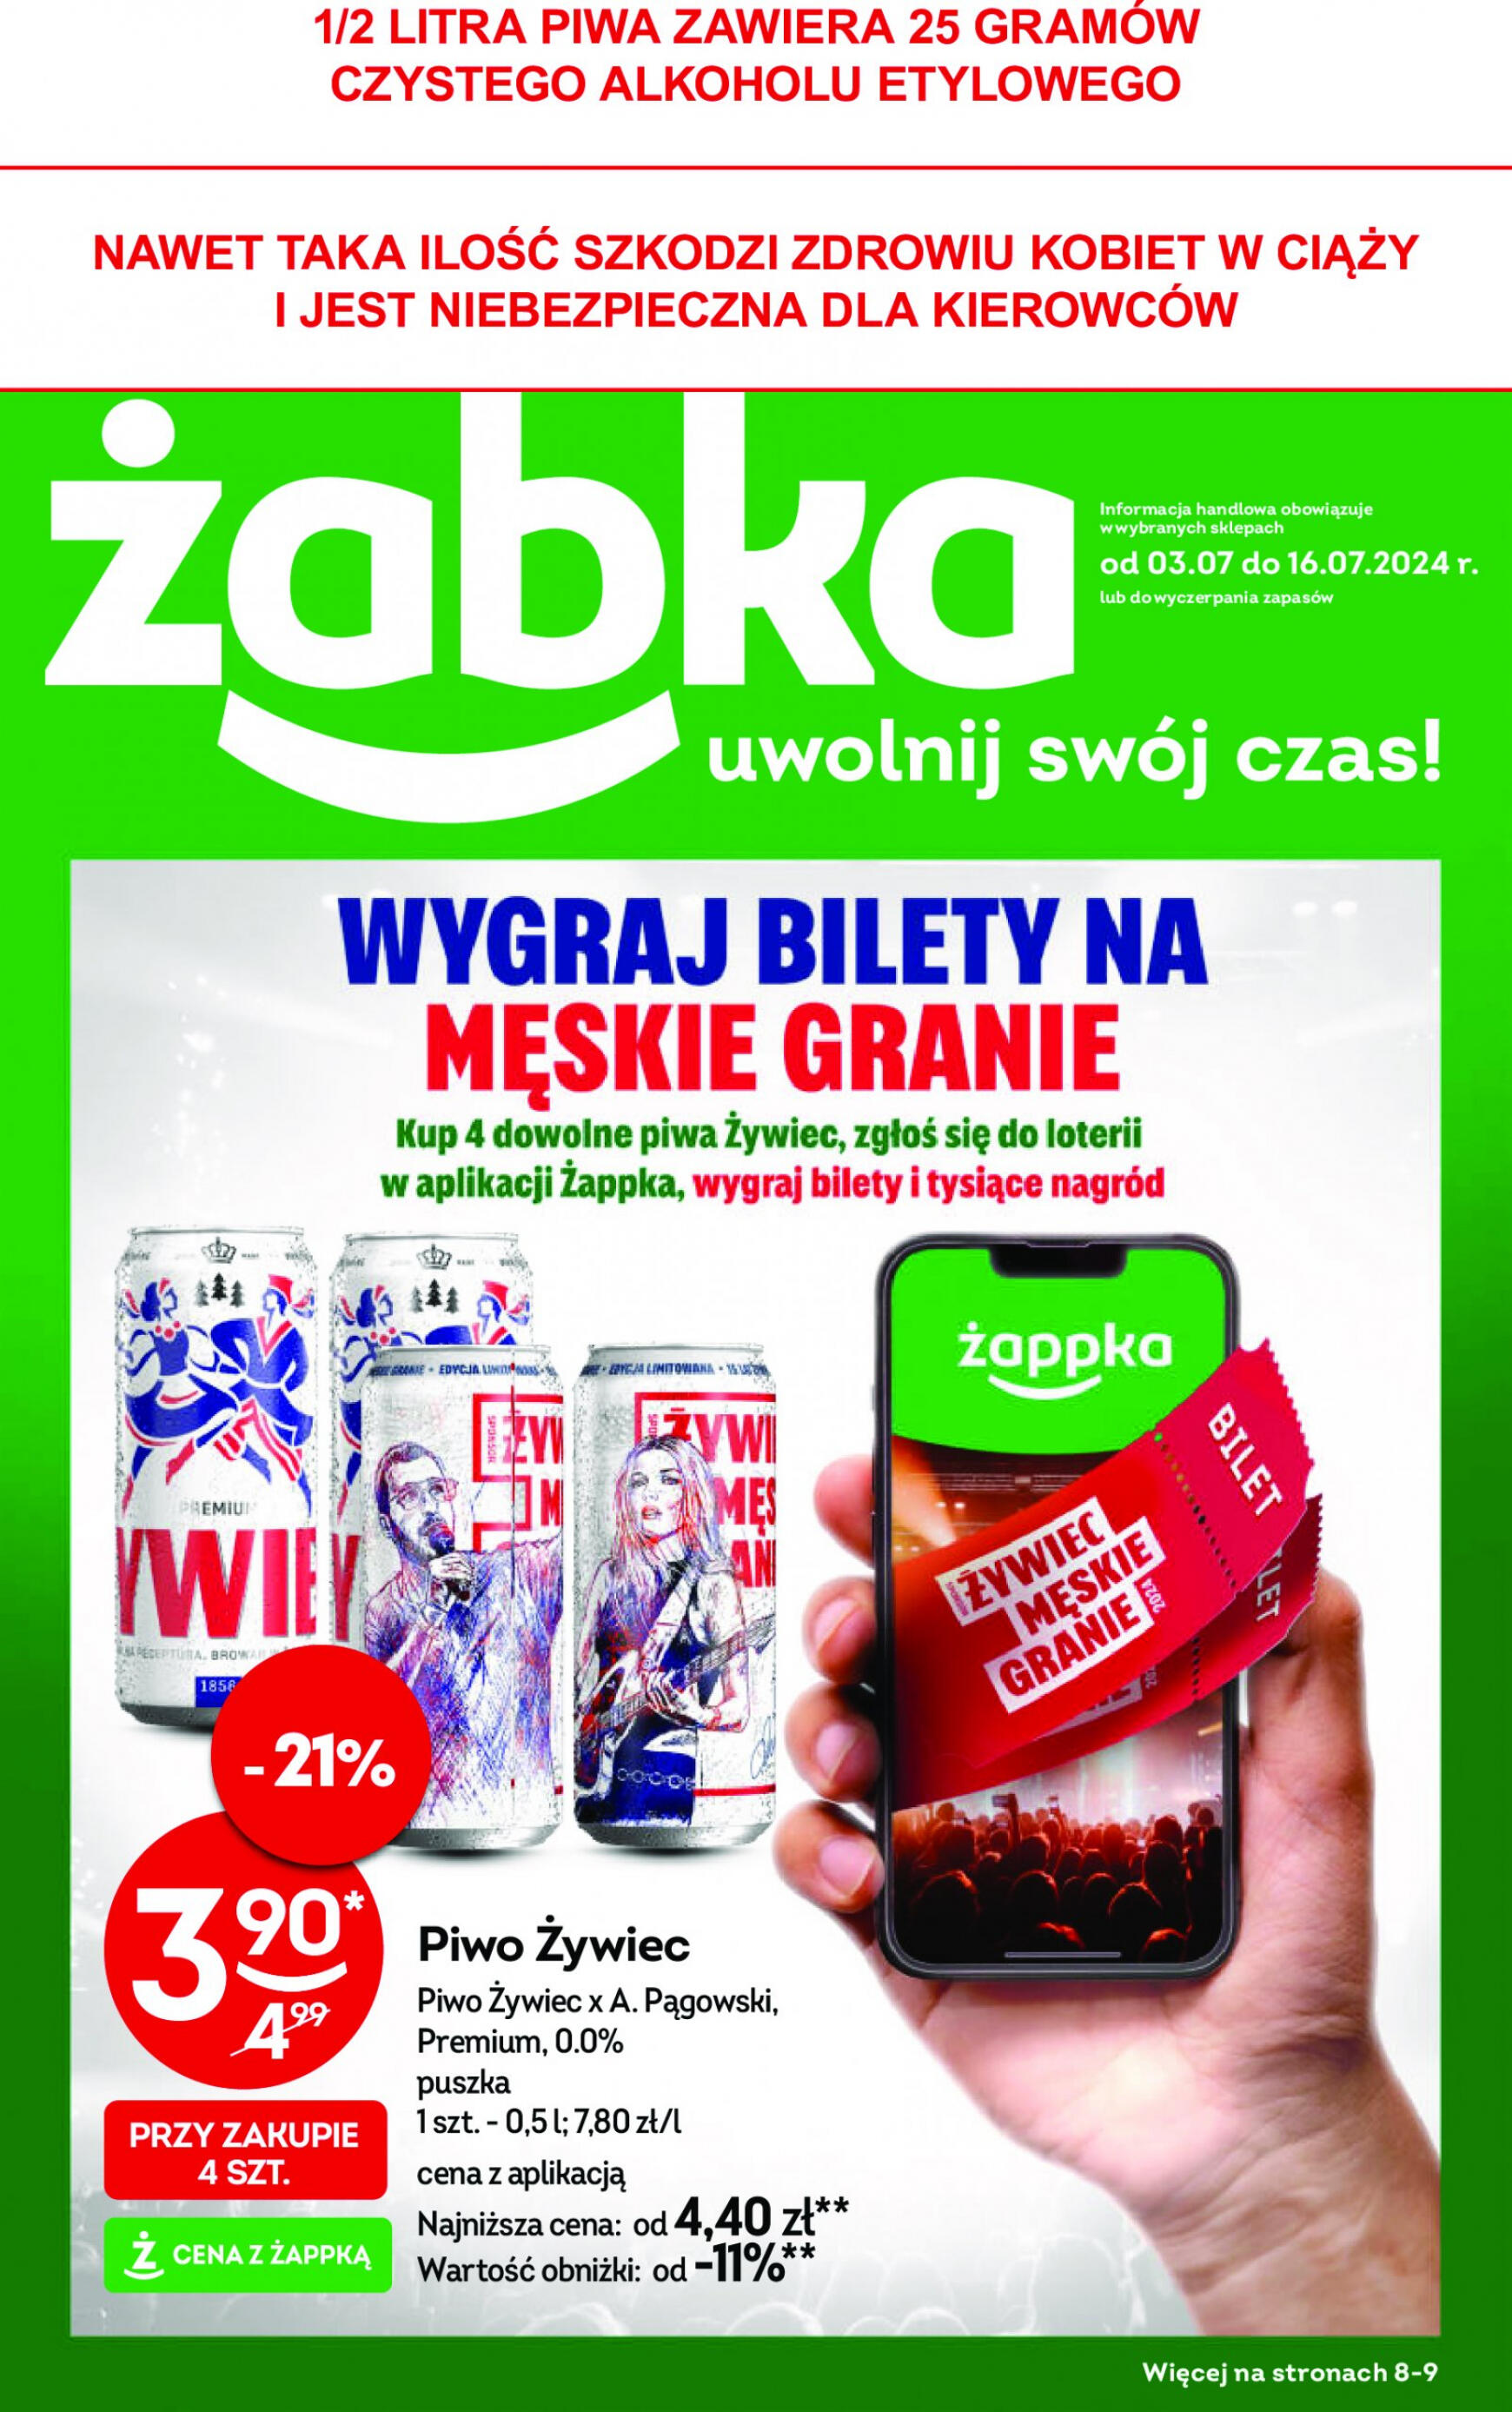 zabka - Żabka gazetka aktualna ważna od 03.07. - 16.07.